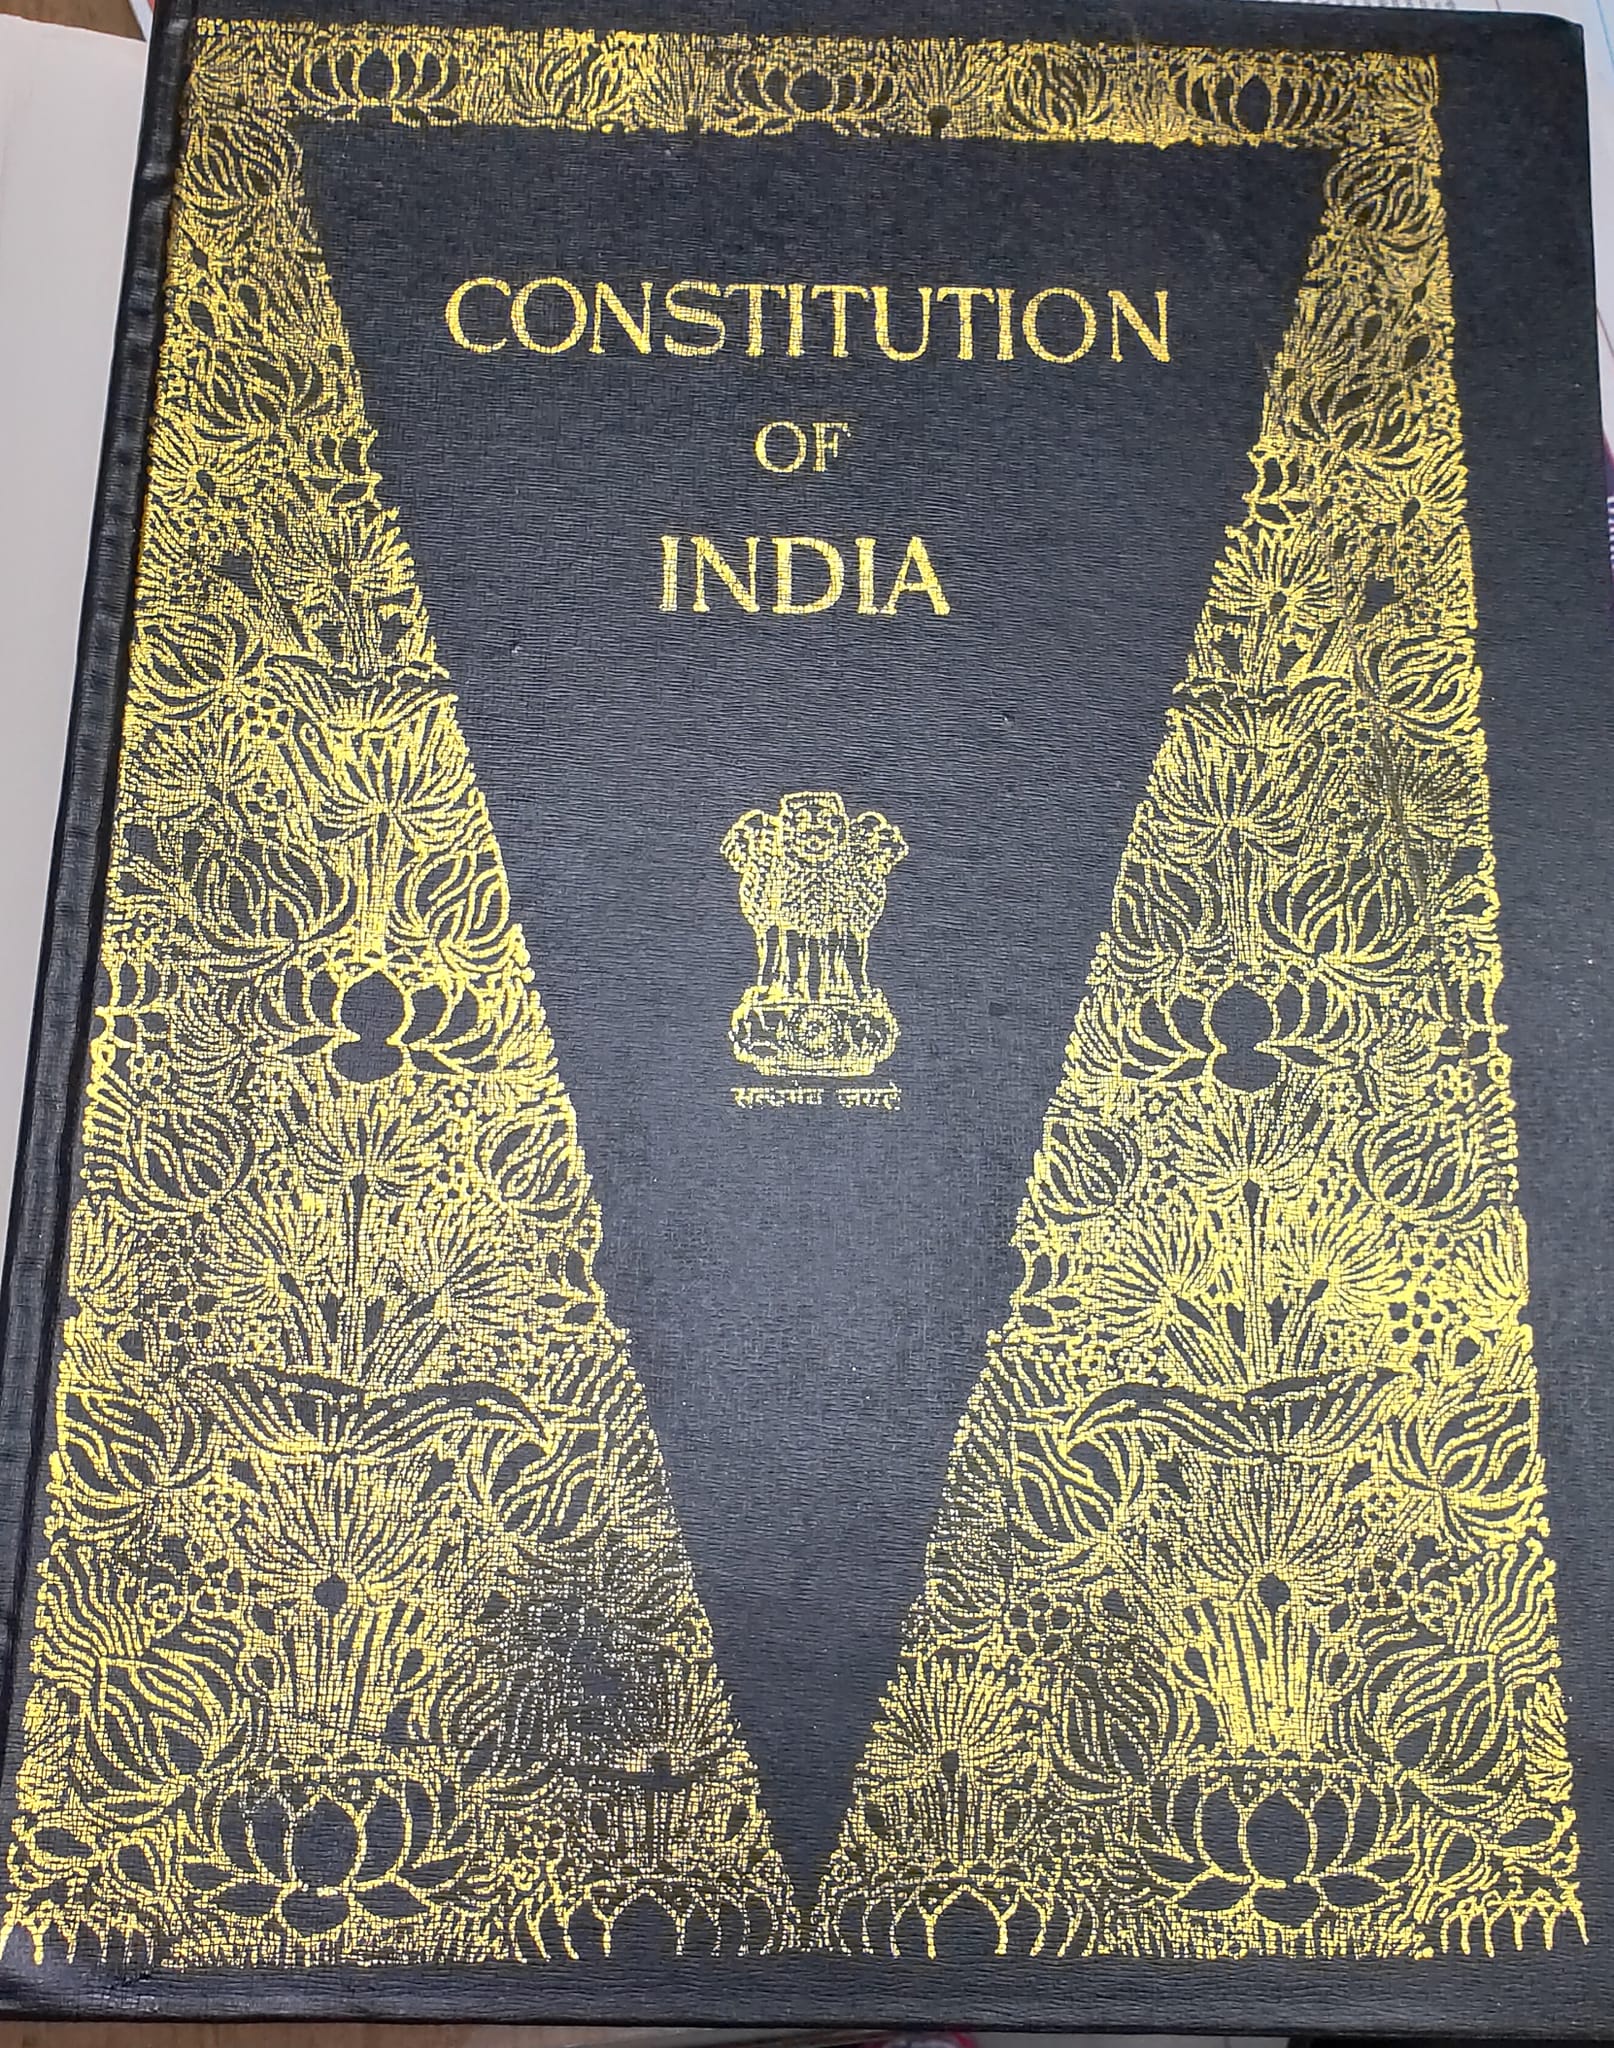 कनक तिवारी लिखते हैं-  संविधान दरक रहा है !